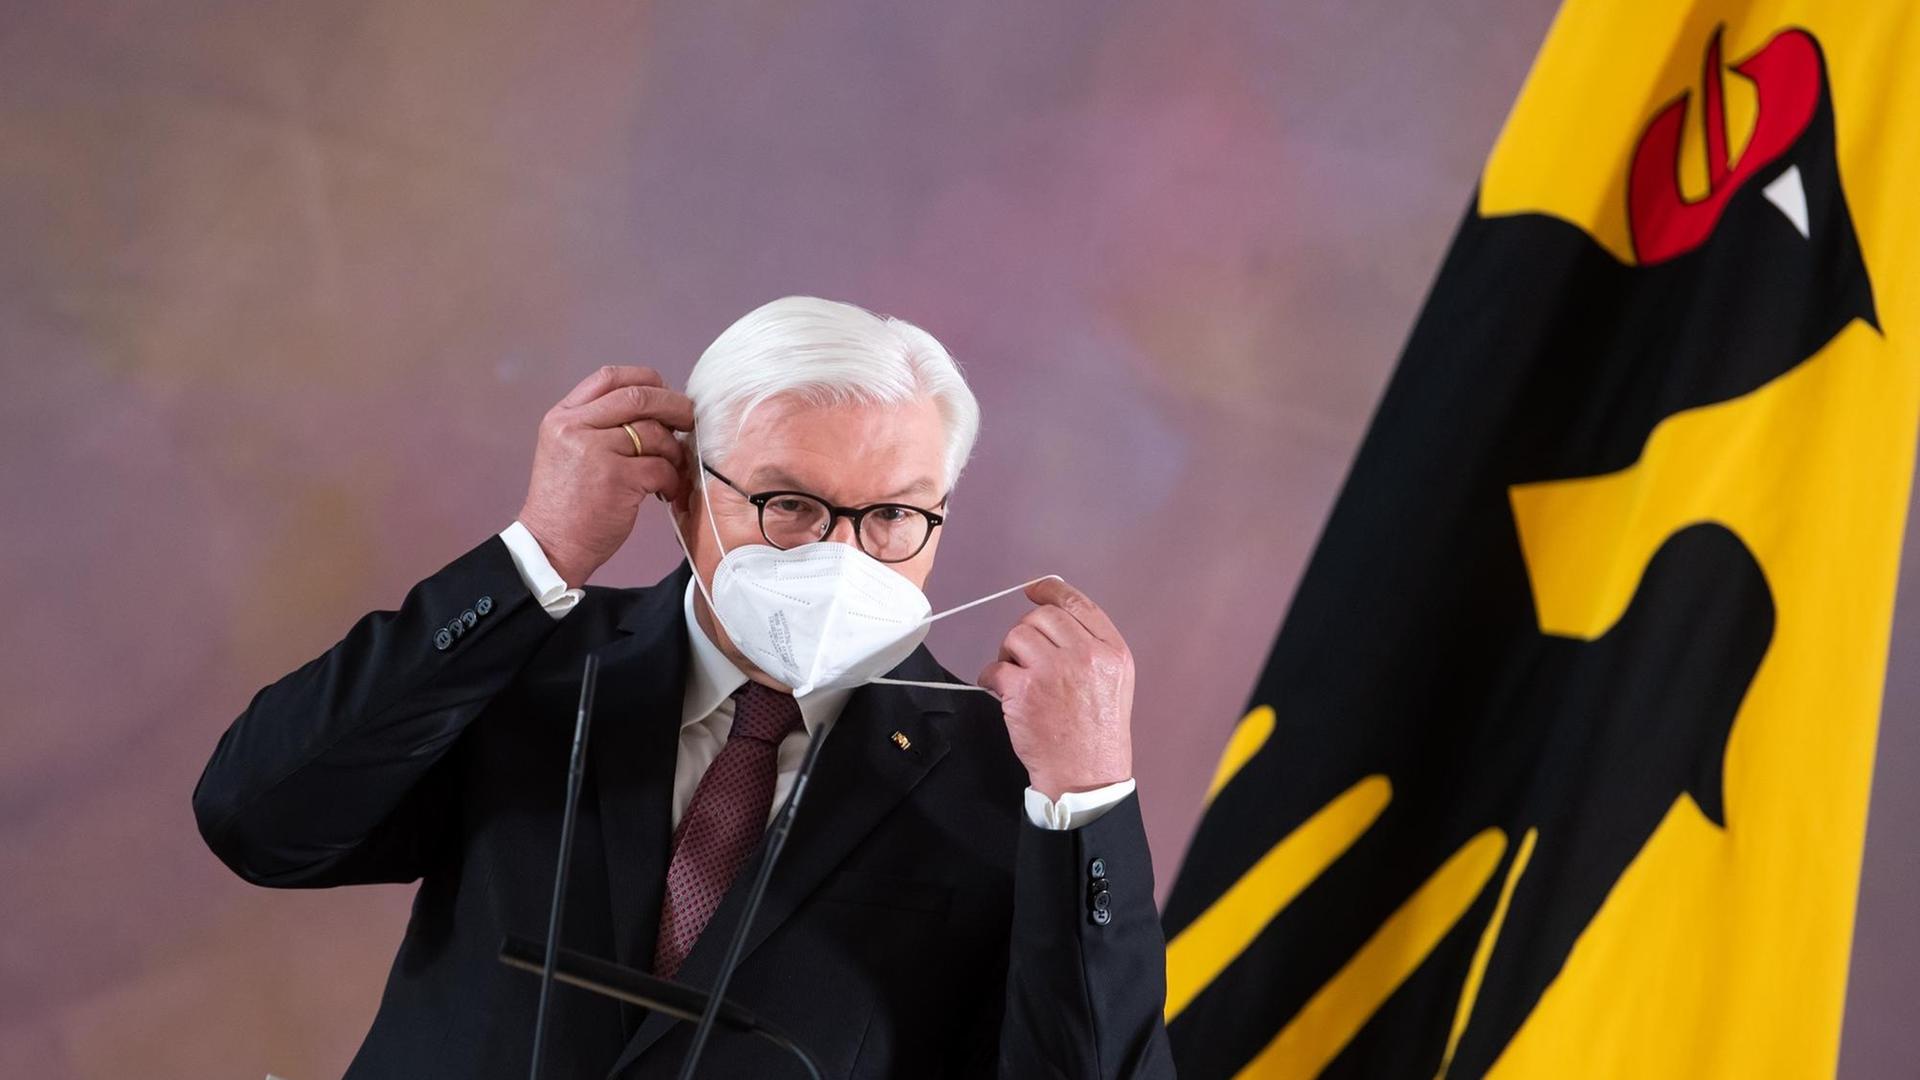 Bundespräsident Frank-Walter Steinmeier setzt sich im Schloss Bellevue nach seinem Statement, dass er für eine zweite Amtszeit bereit steht, eine FFP2-Maske auf. Am rechten Bildrand ist eine gelbe Flagge mit einem schwarzen Adler zu sehen.